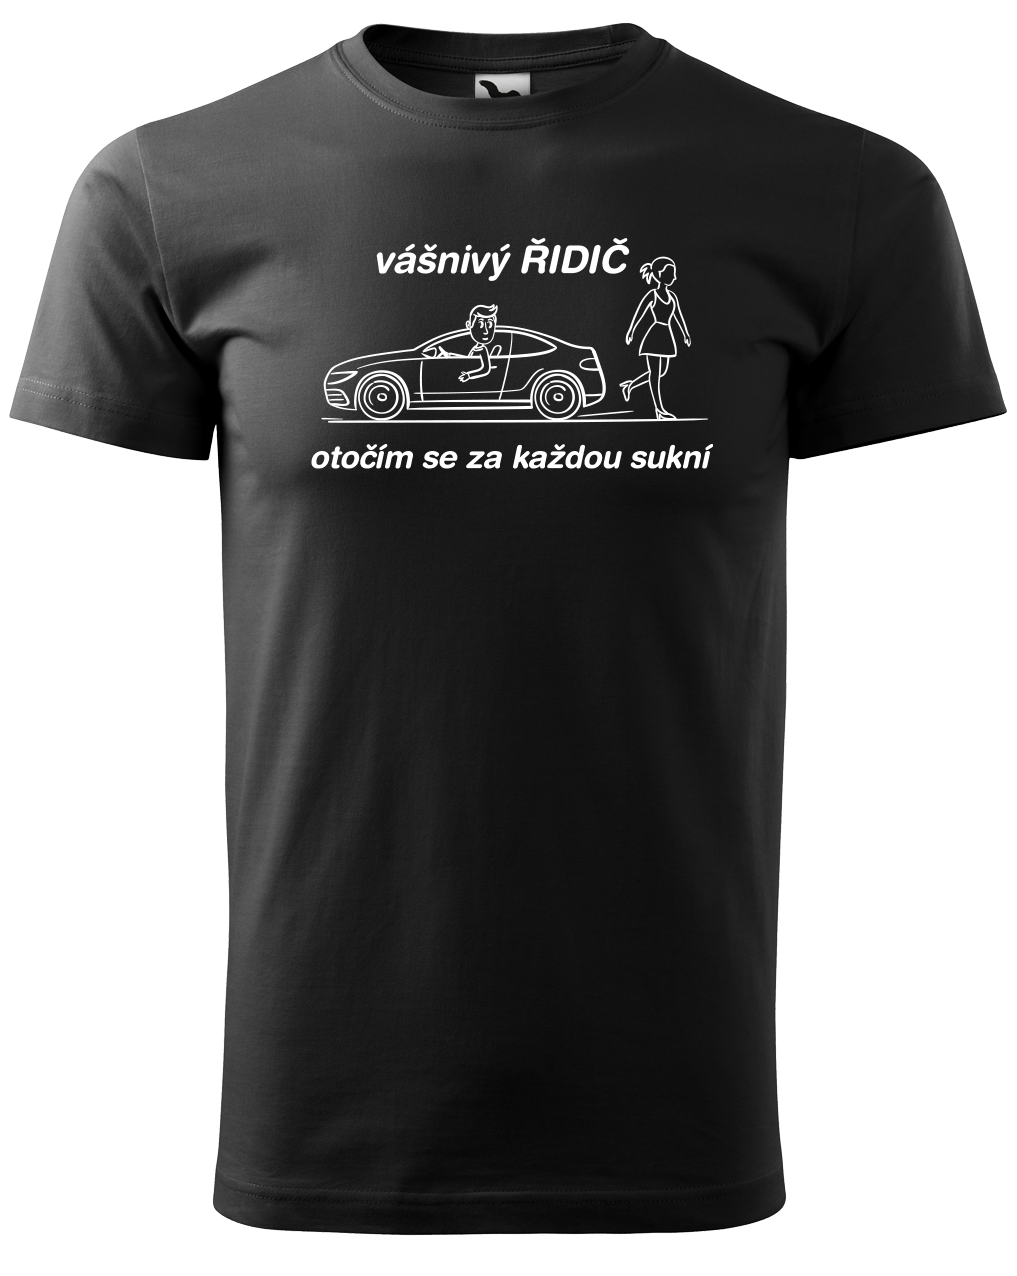 Vtipné tričko pro řidiče - Vášnivý řidič Velikost: S, Barva: Černá (01)